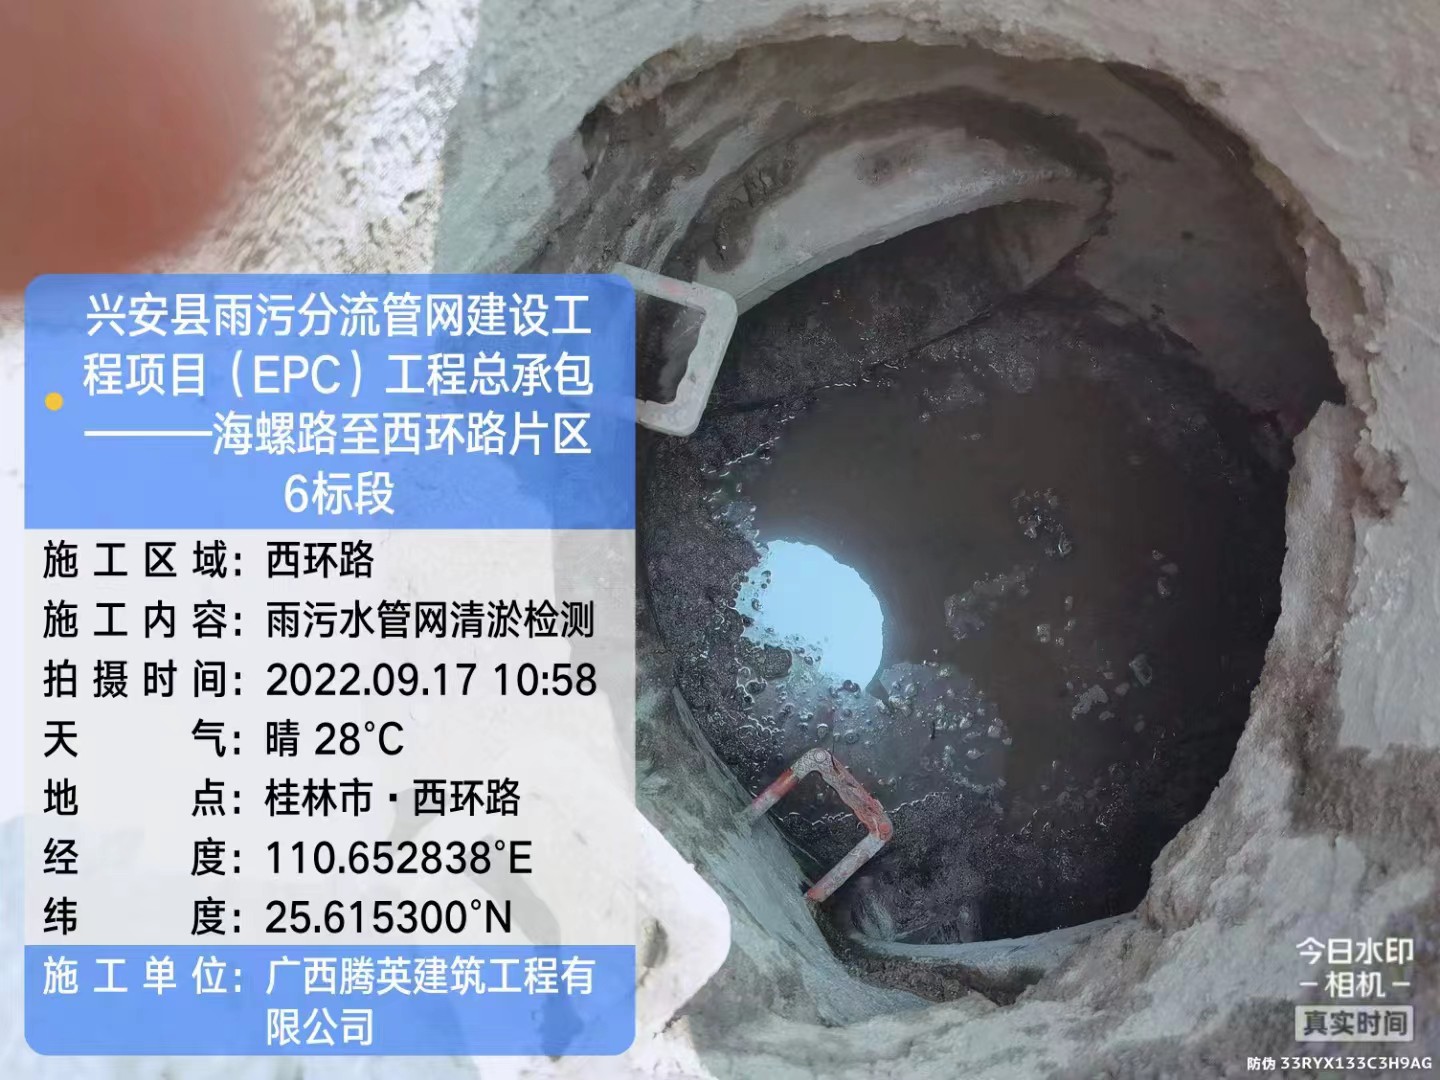 承接杭州拱墅区排污管道检测 管道点状修复君得利帮您